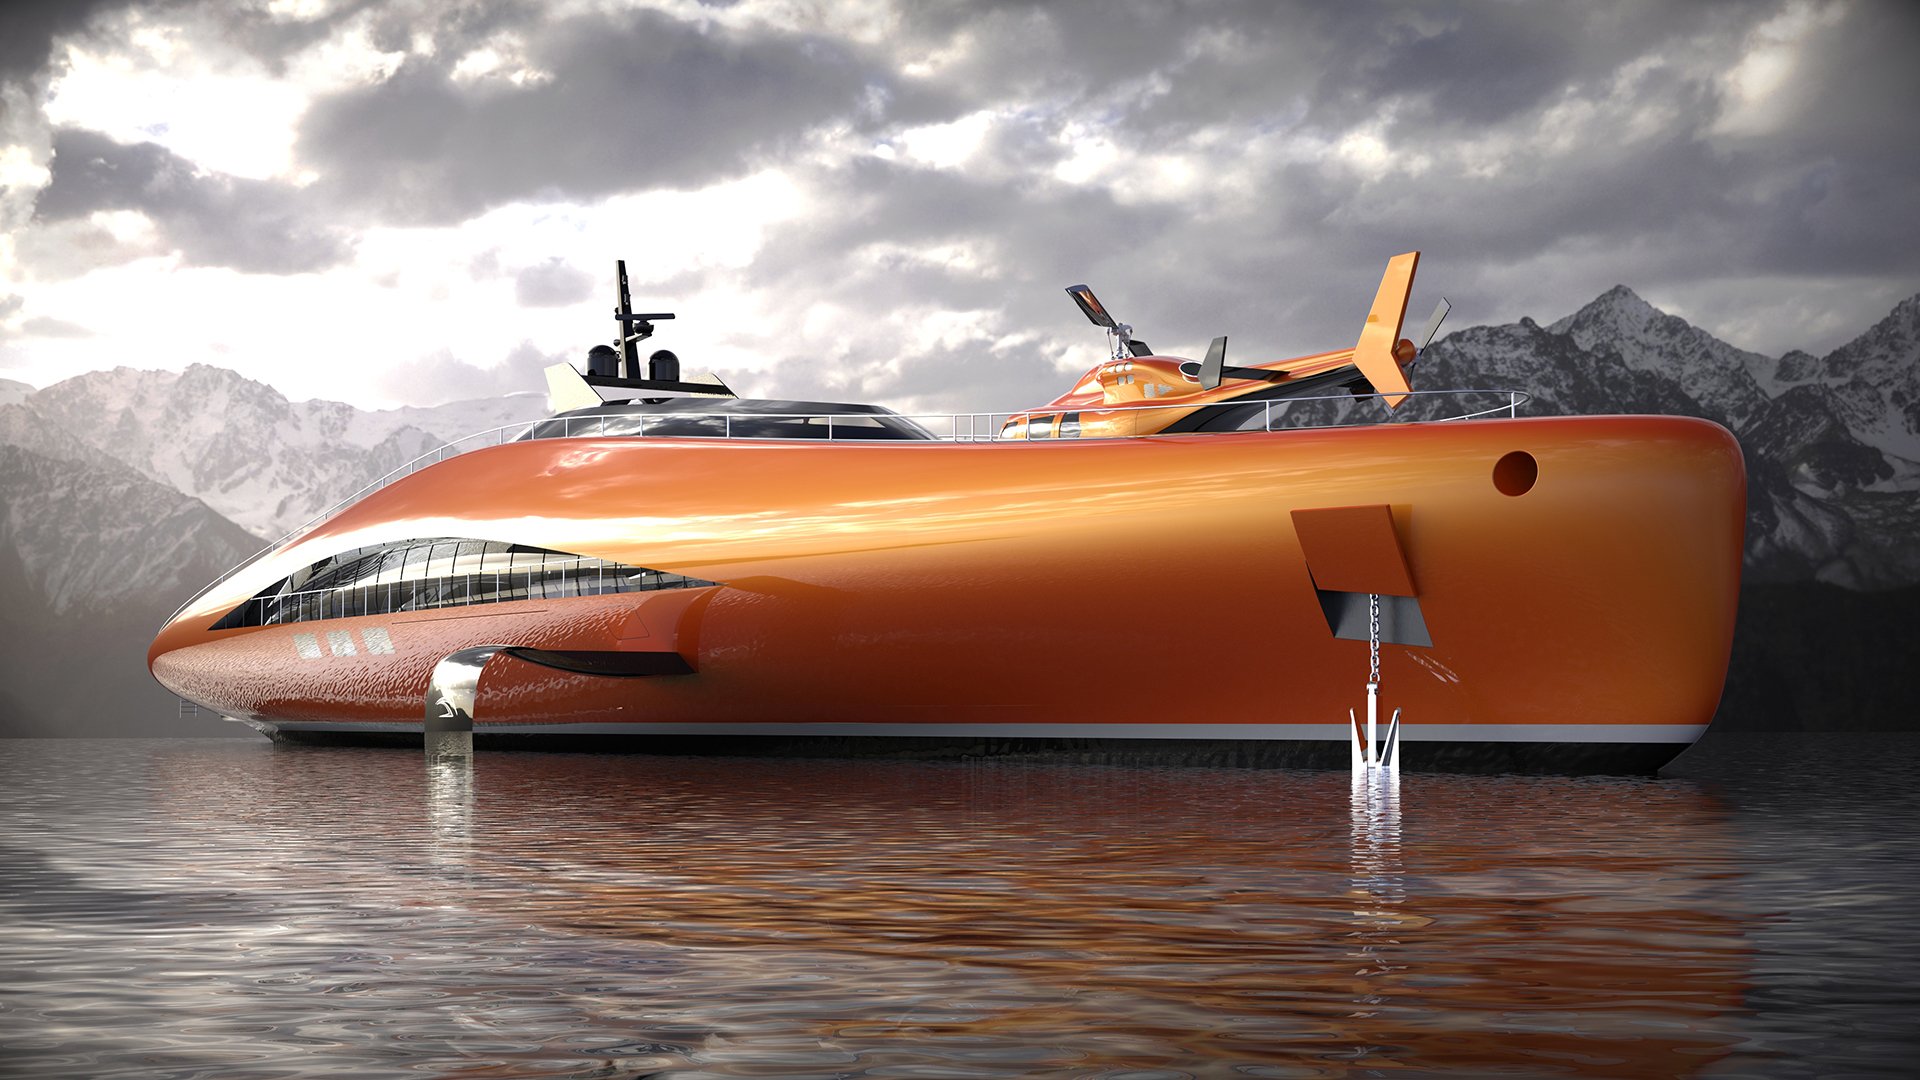 imagen 12 de Plectrum Hydrofoil Yacht, el diseño de Lazzarini que tiene todo lo que puedas soñar en un yate de lujo.